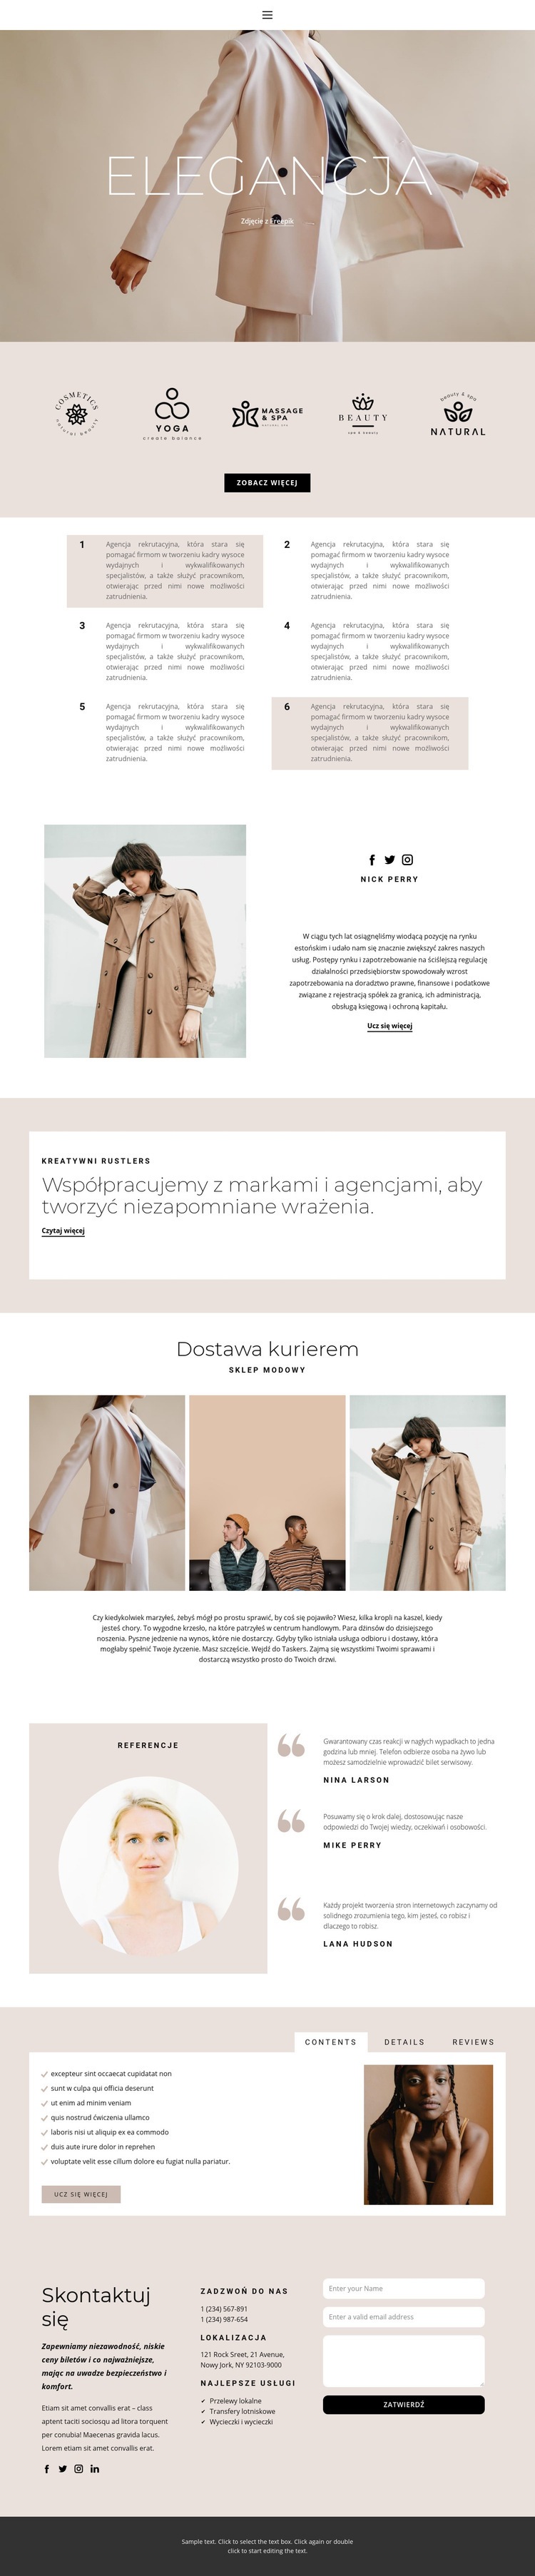 Elegancja w modzie Makieta strony internetowej